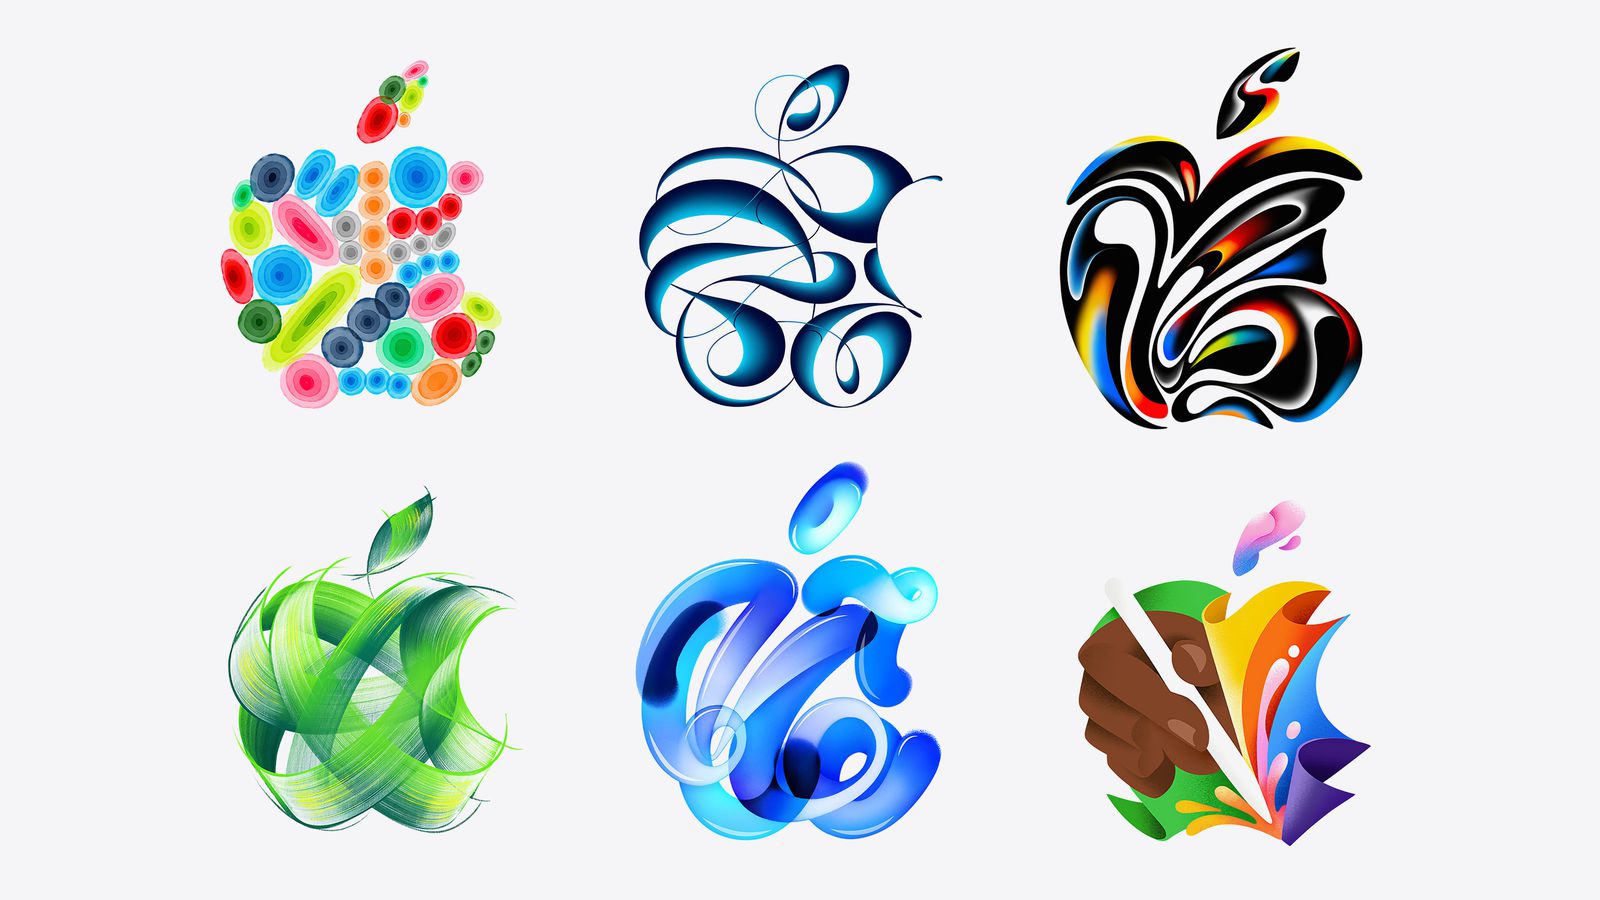 iPhoneIslam.com에서는 비주류 뉴스에 영향을 받은 구, 리본 모양 및 나뭇잎 모티브 컬렉션을 포함하여 밝은 색상과 흐르는 모양의 6가지 추상 디자인을 제공합니다.